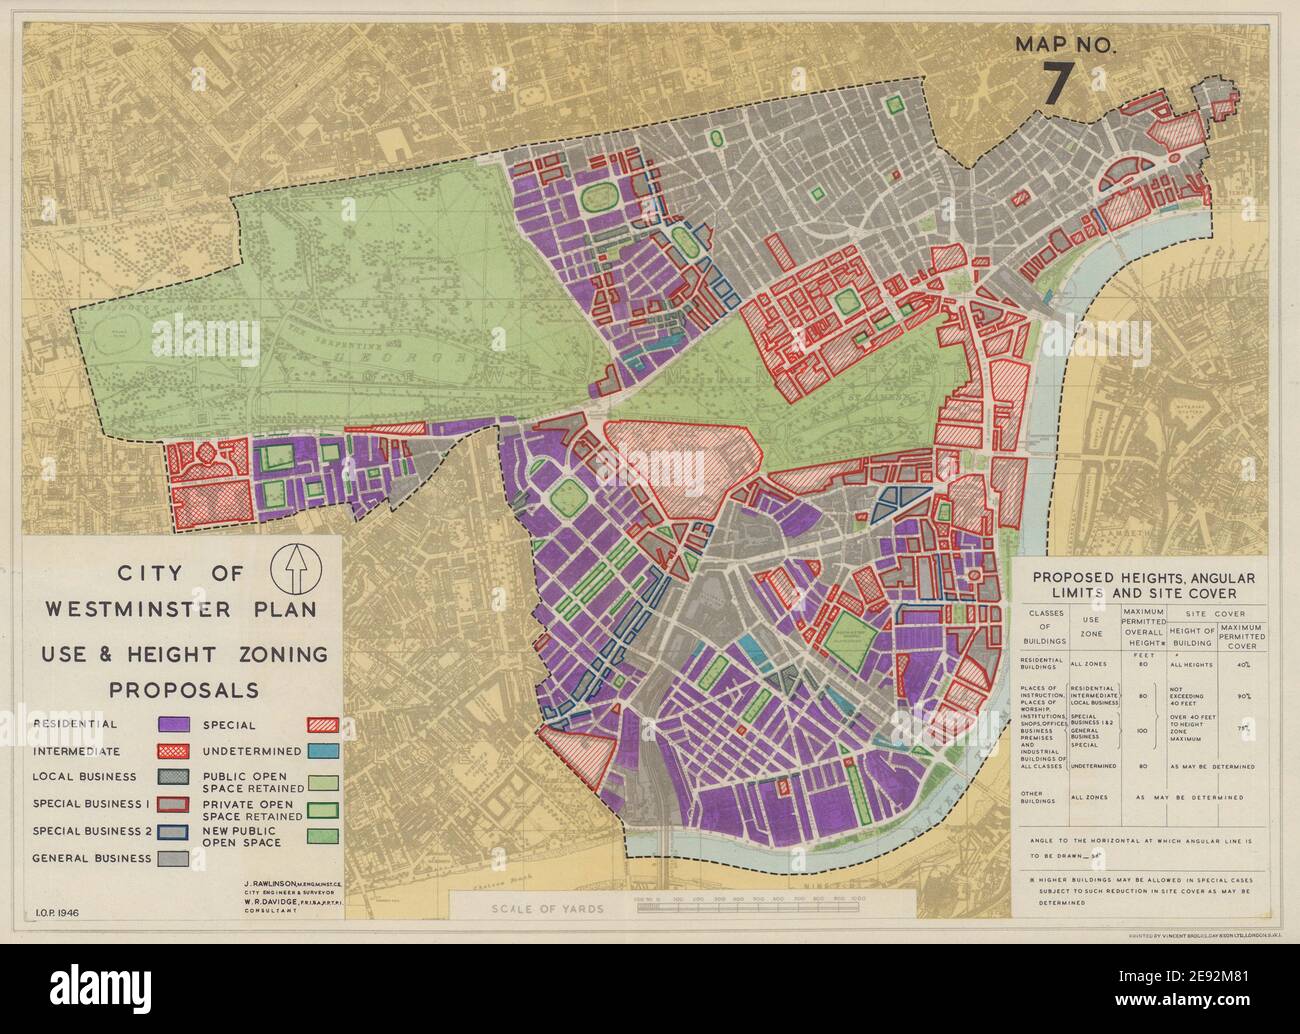 Piano della città di Westminster. Utilizzo e proposte di suddivisione in zone in altezza. Mappa DI RAWLINSON 1946 Foto Stock